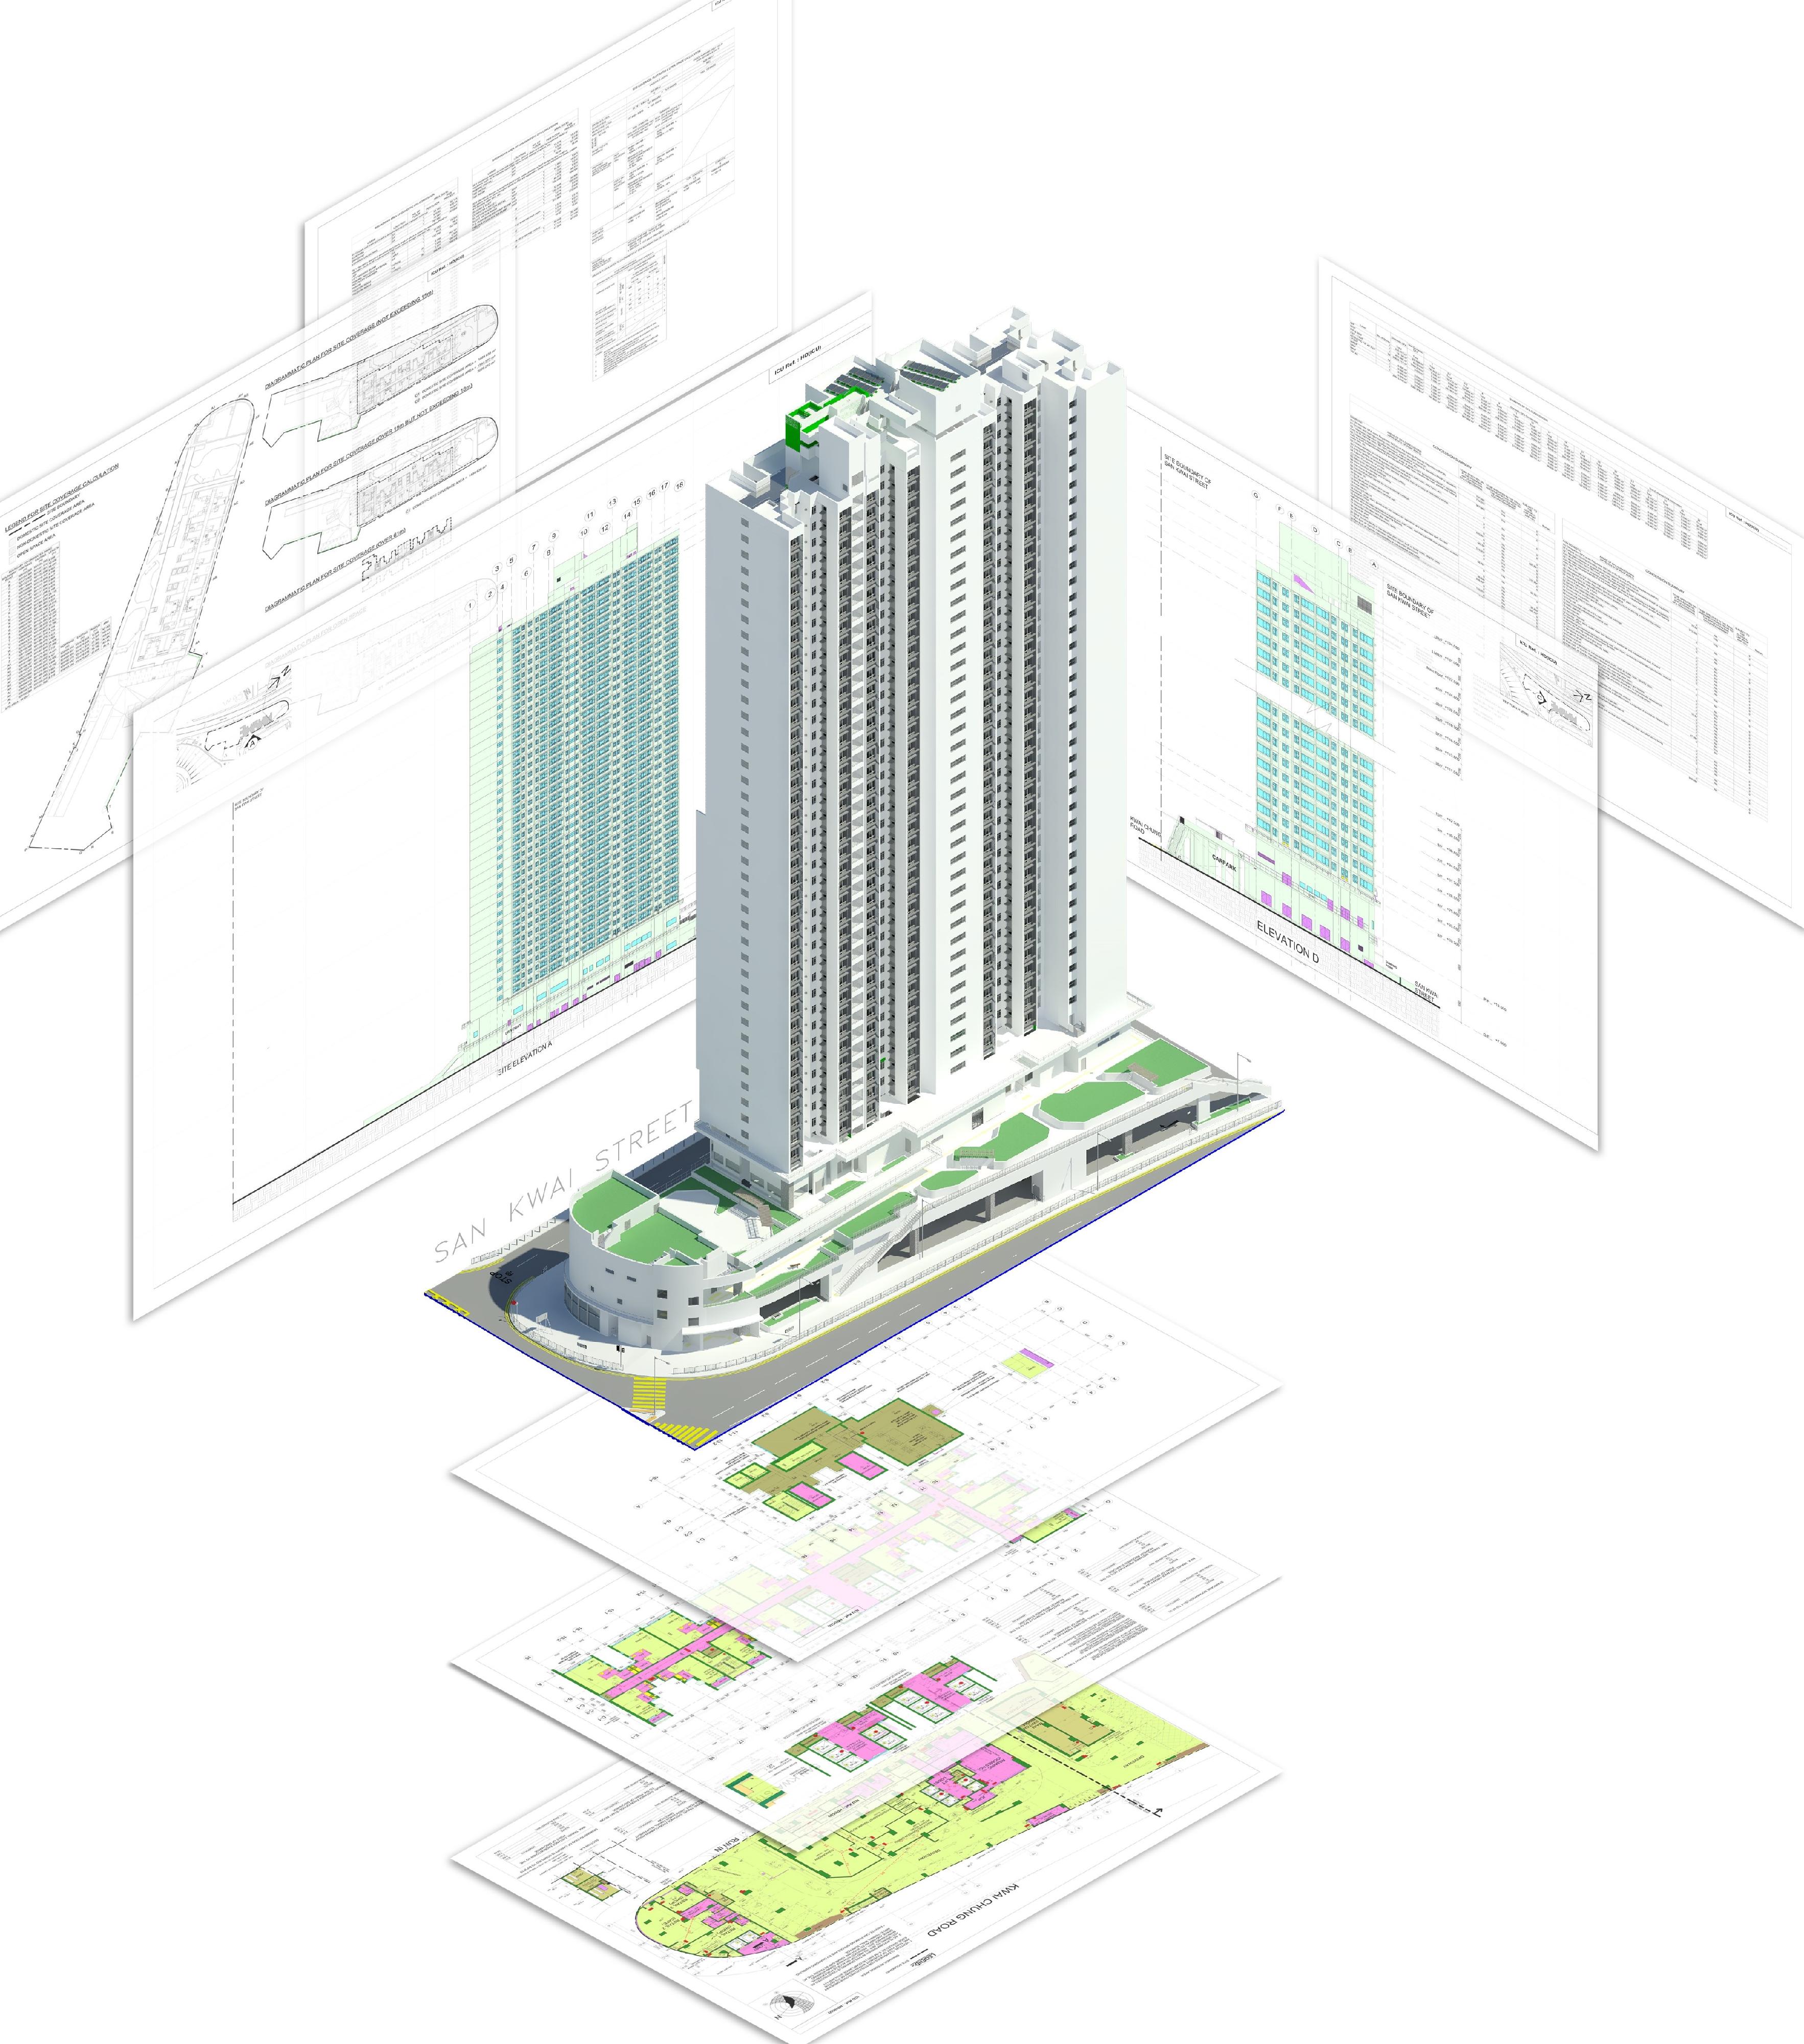 香港房屋委員會項目「建築信息模擬新里程——成功呈交與審批法定圖則」在建造業議會建築信息模擬成就嘉許禮2022獲頒項目獎。該項目以建築信息模擬製作建築圖則作法定審批，是建造業界應用建築信息模擬的其中一項最重要的領域。圖示以建築信息模擬製作的新葵街公營房屋發展項目建築圖則。